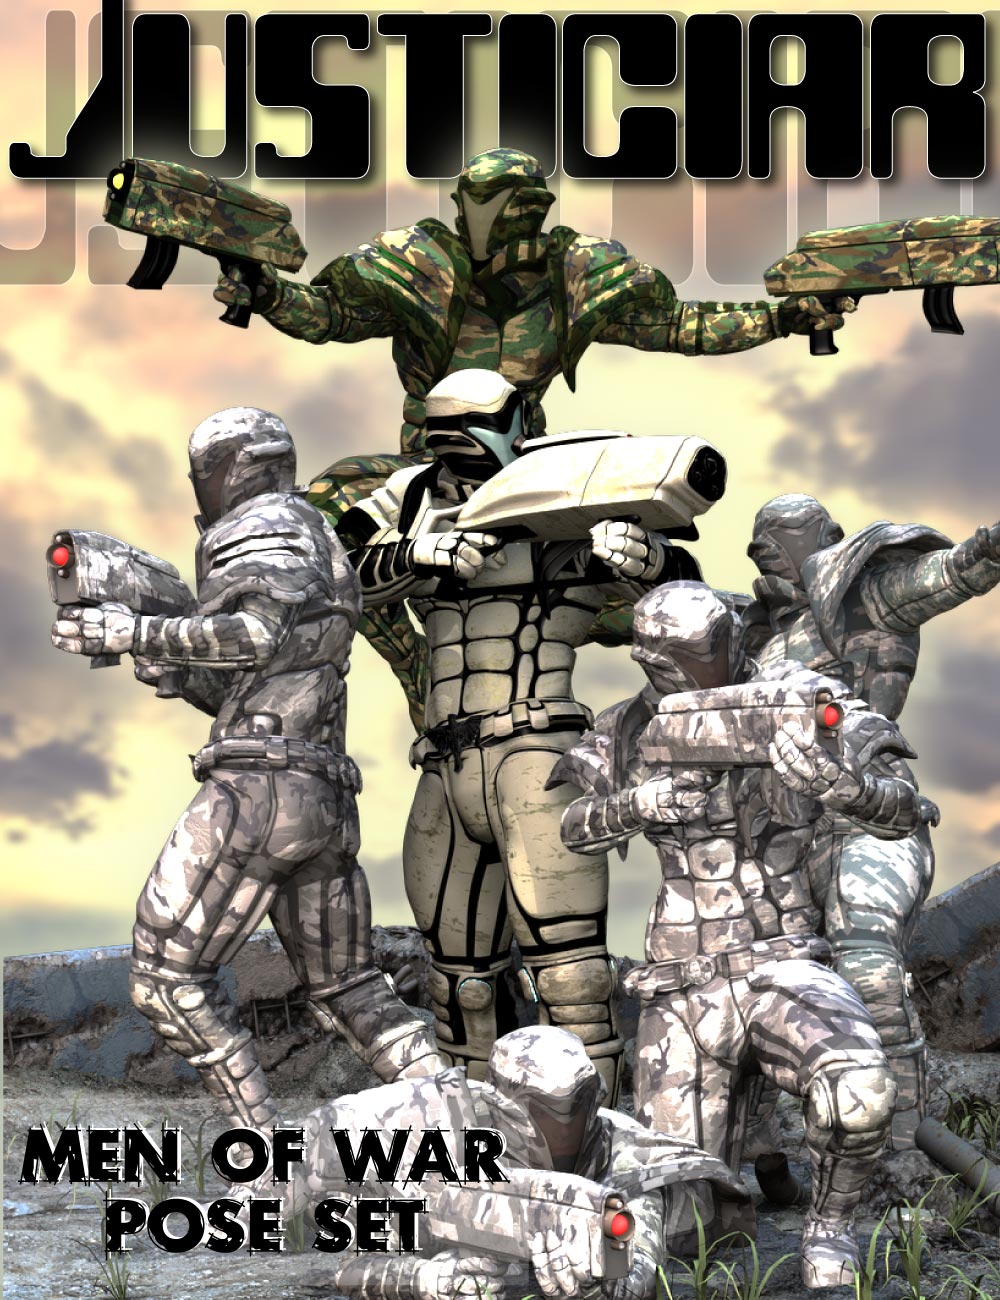 Justiciar Men of War Pose Set by: Design Anvil, 3D Models by Daz 3D